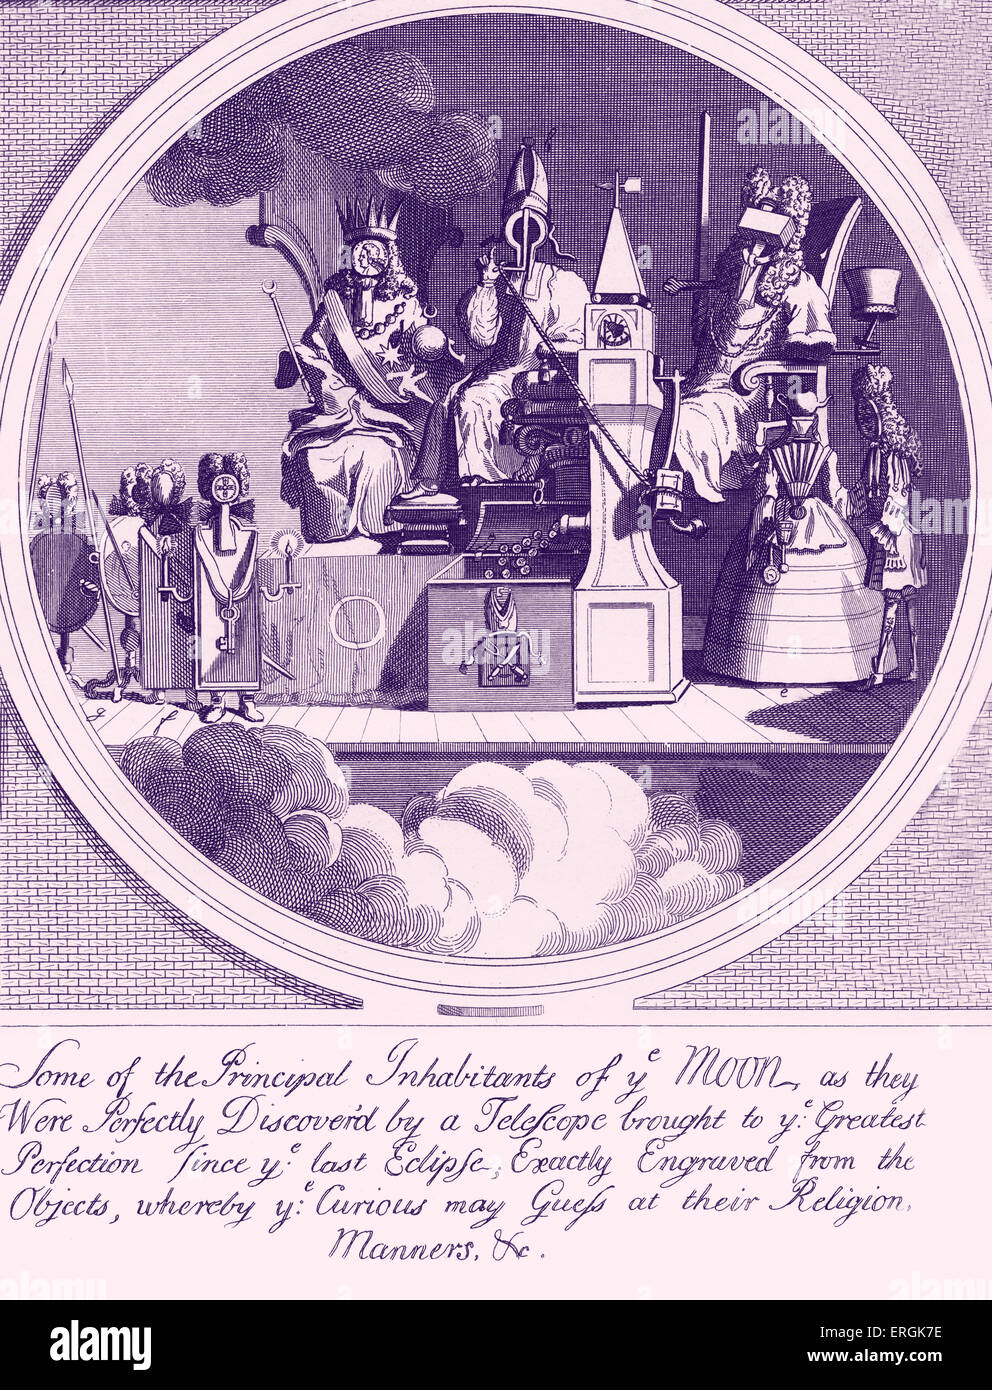 Image, l'Épiscopat, et la Loi par W. Hogarth 1724 Sous-titre suivant : certains des principaux habitants de ye Lune, comme ils ont été Banque D'Images